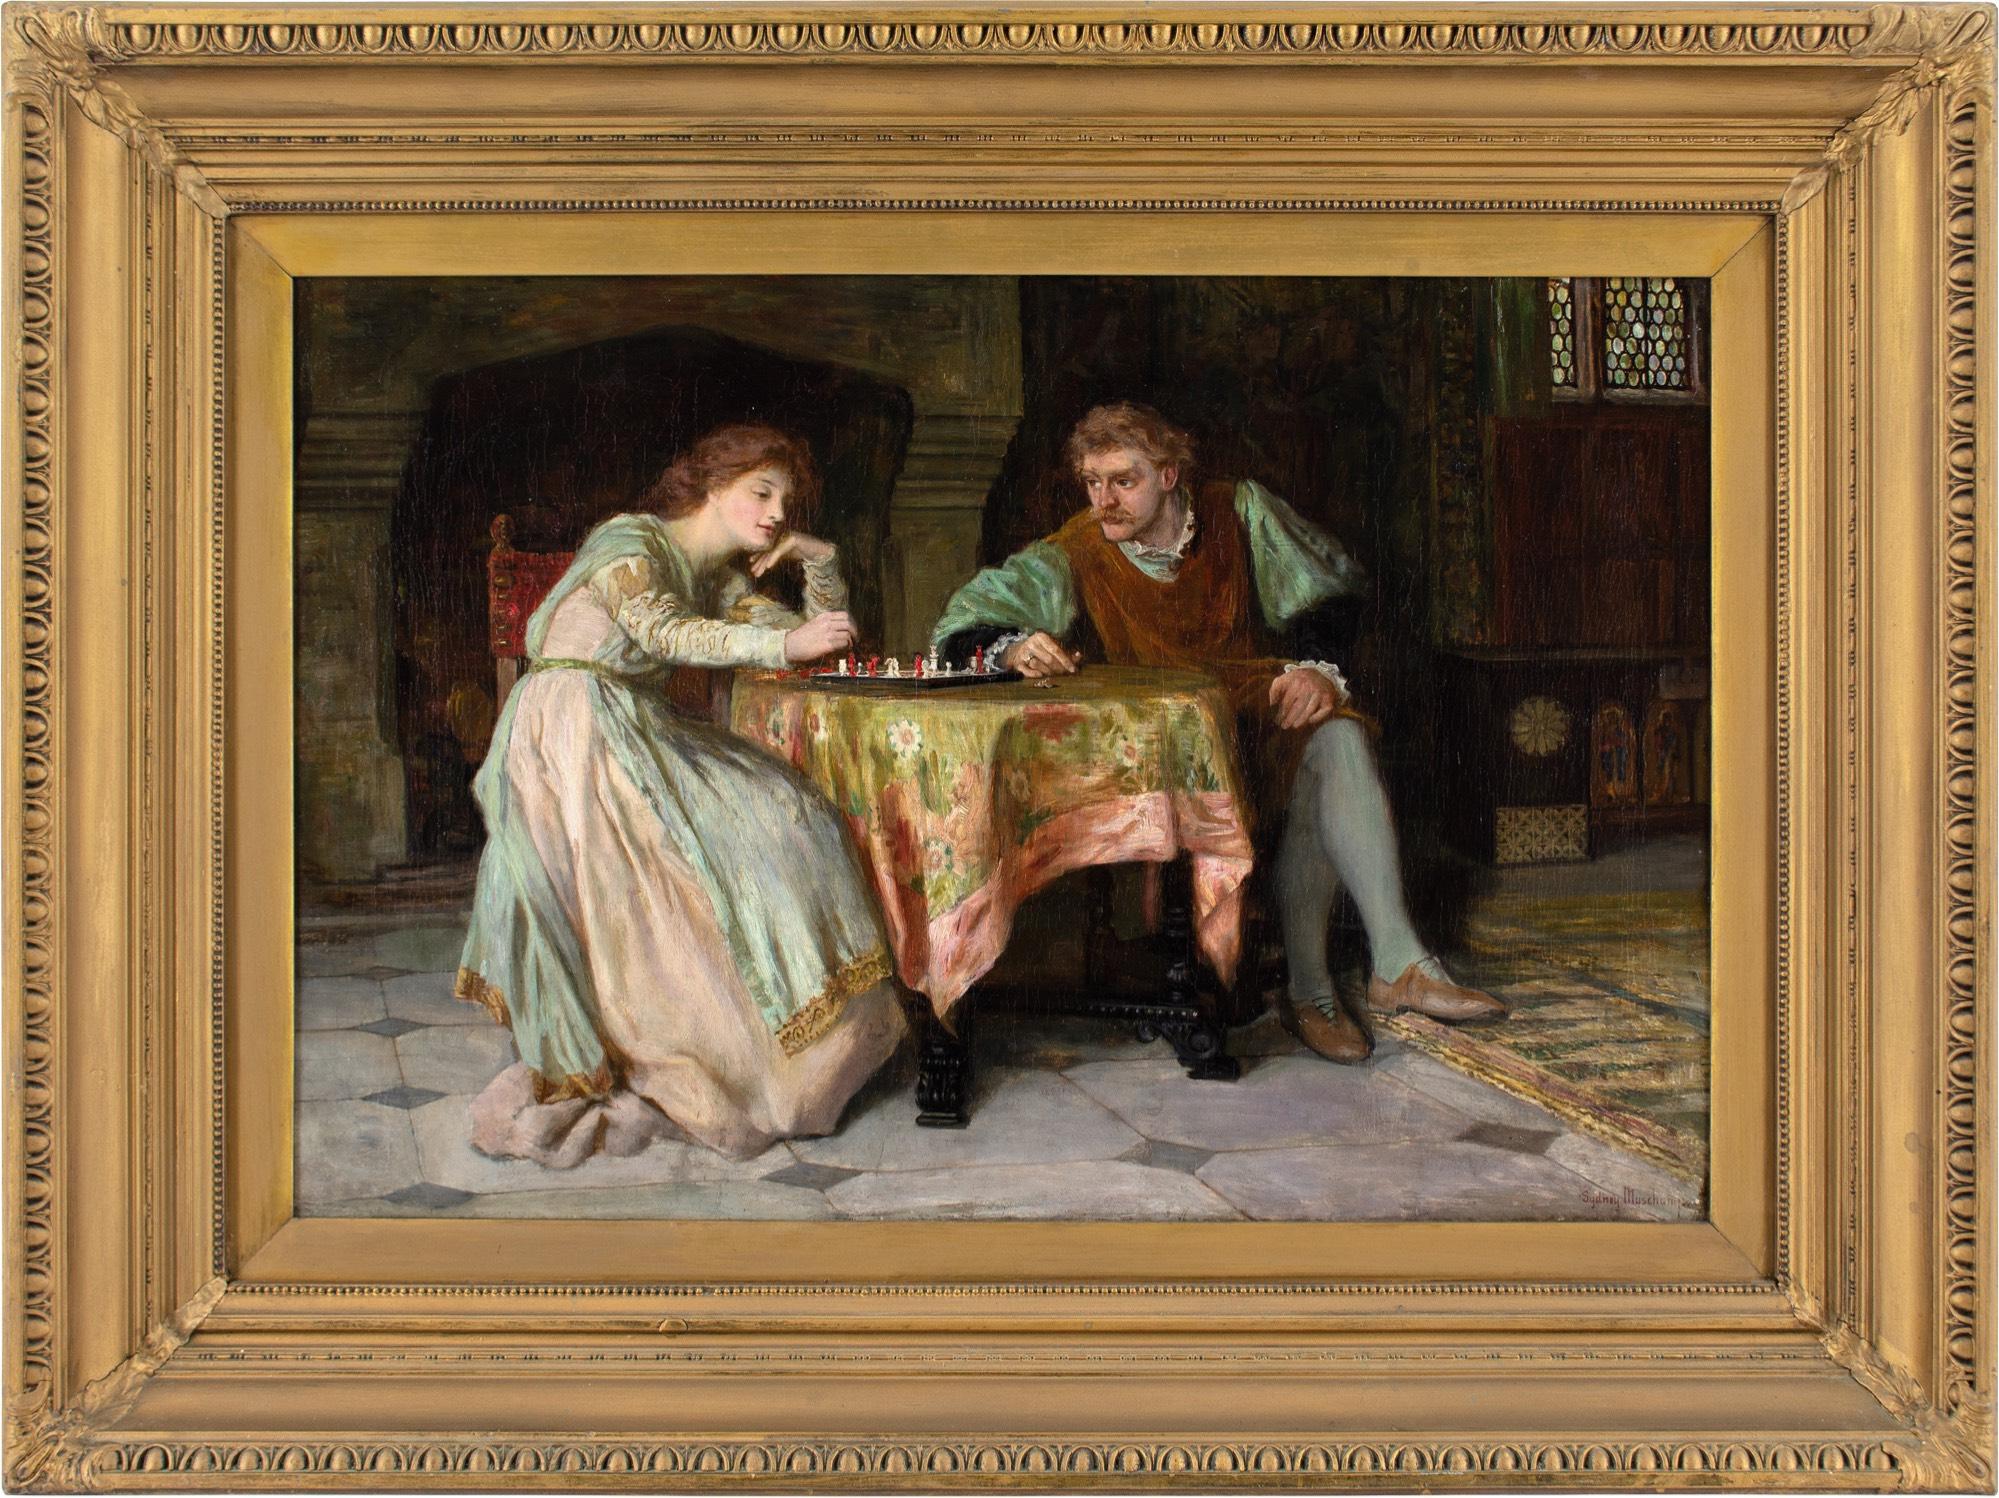 Cette peinture à l'huile de la fin du XIXe siècle de l'artiste britannique Francis Sydney Muschamp RBA (1851-1929) représente un couple médiéval jouant aux échecs dans un intérieur historique, peut-être un château. Muschamp était surtout connu pour